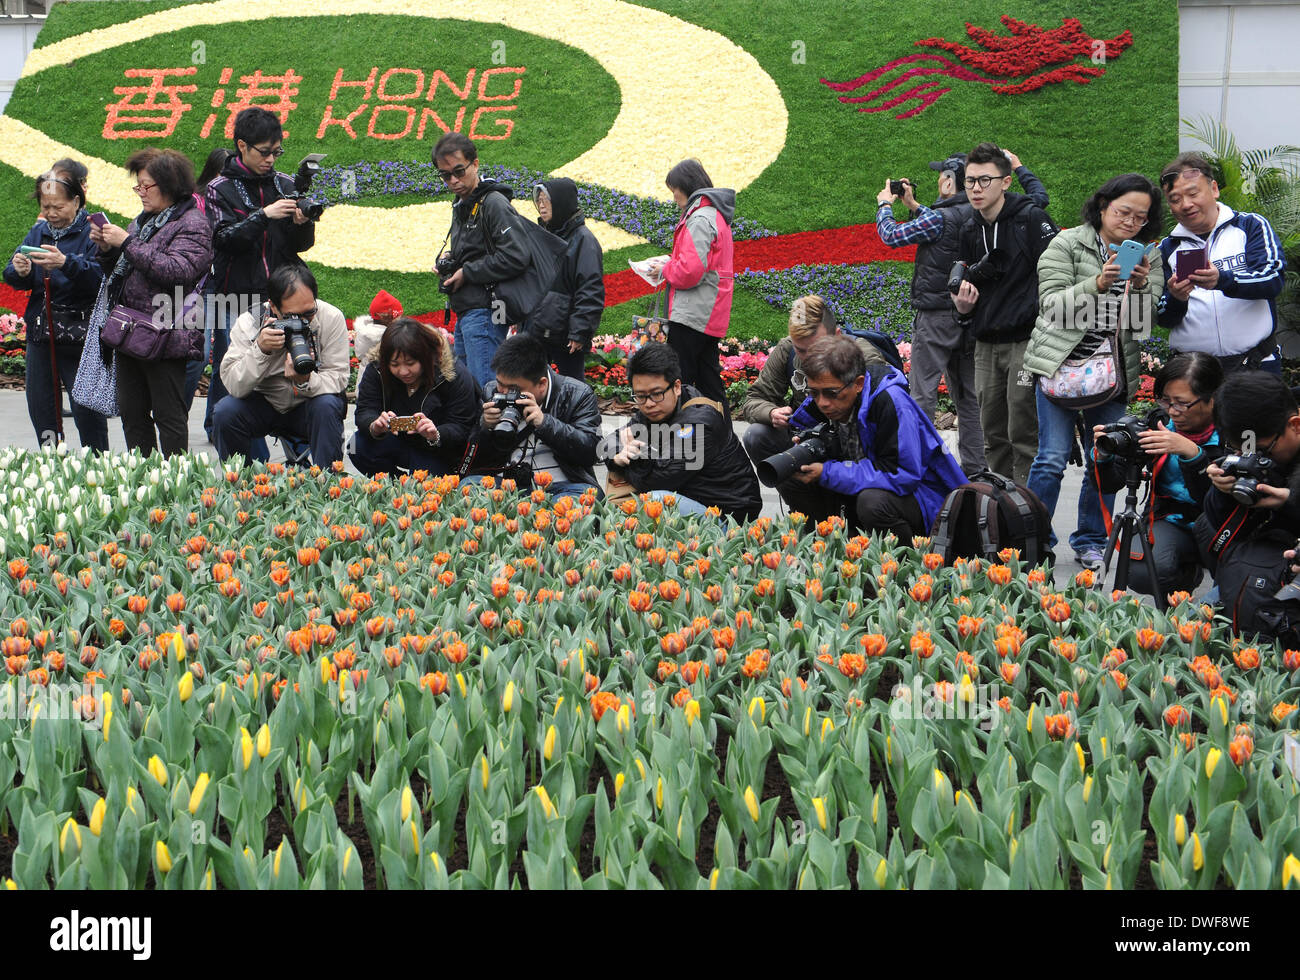 Hong Kong, Cina. 7 Mar 2014. La gente a prendere le foto di fiori al 2014 Hong Kong Flower Show in Victoria Park di Hong Kong, Cina del sud, Marzo 7, 2014. Il flower show si svolgerà dal 7 Marzo al 16, che presenta oltre 350.000 fiori. © Wong Pun Keung/Xinhua/Alamy Live News Foto Stock